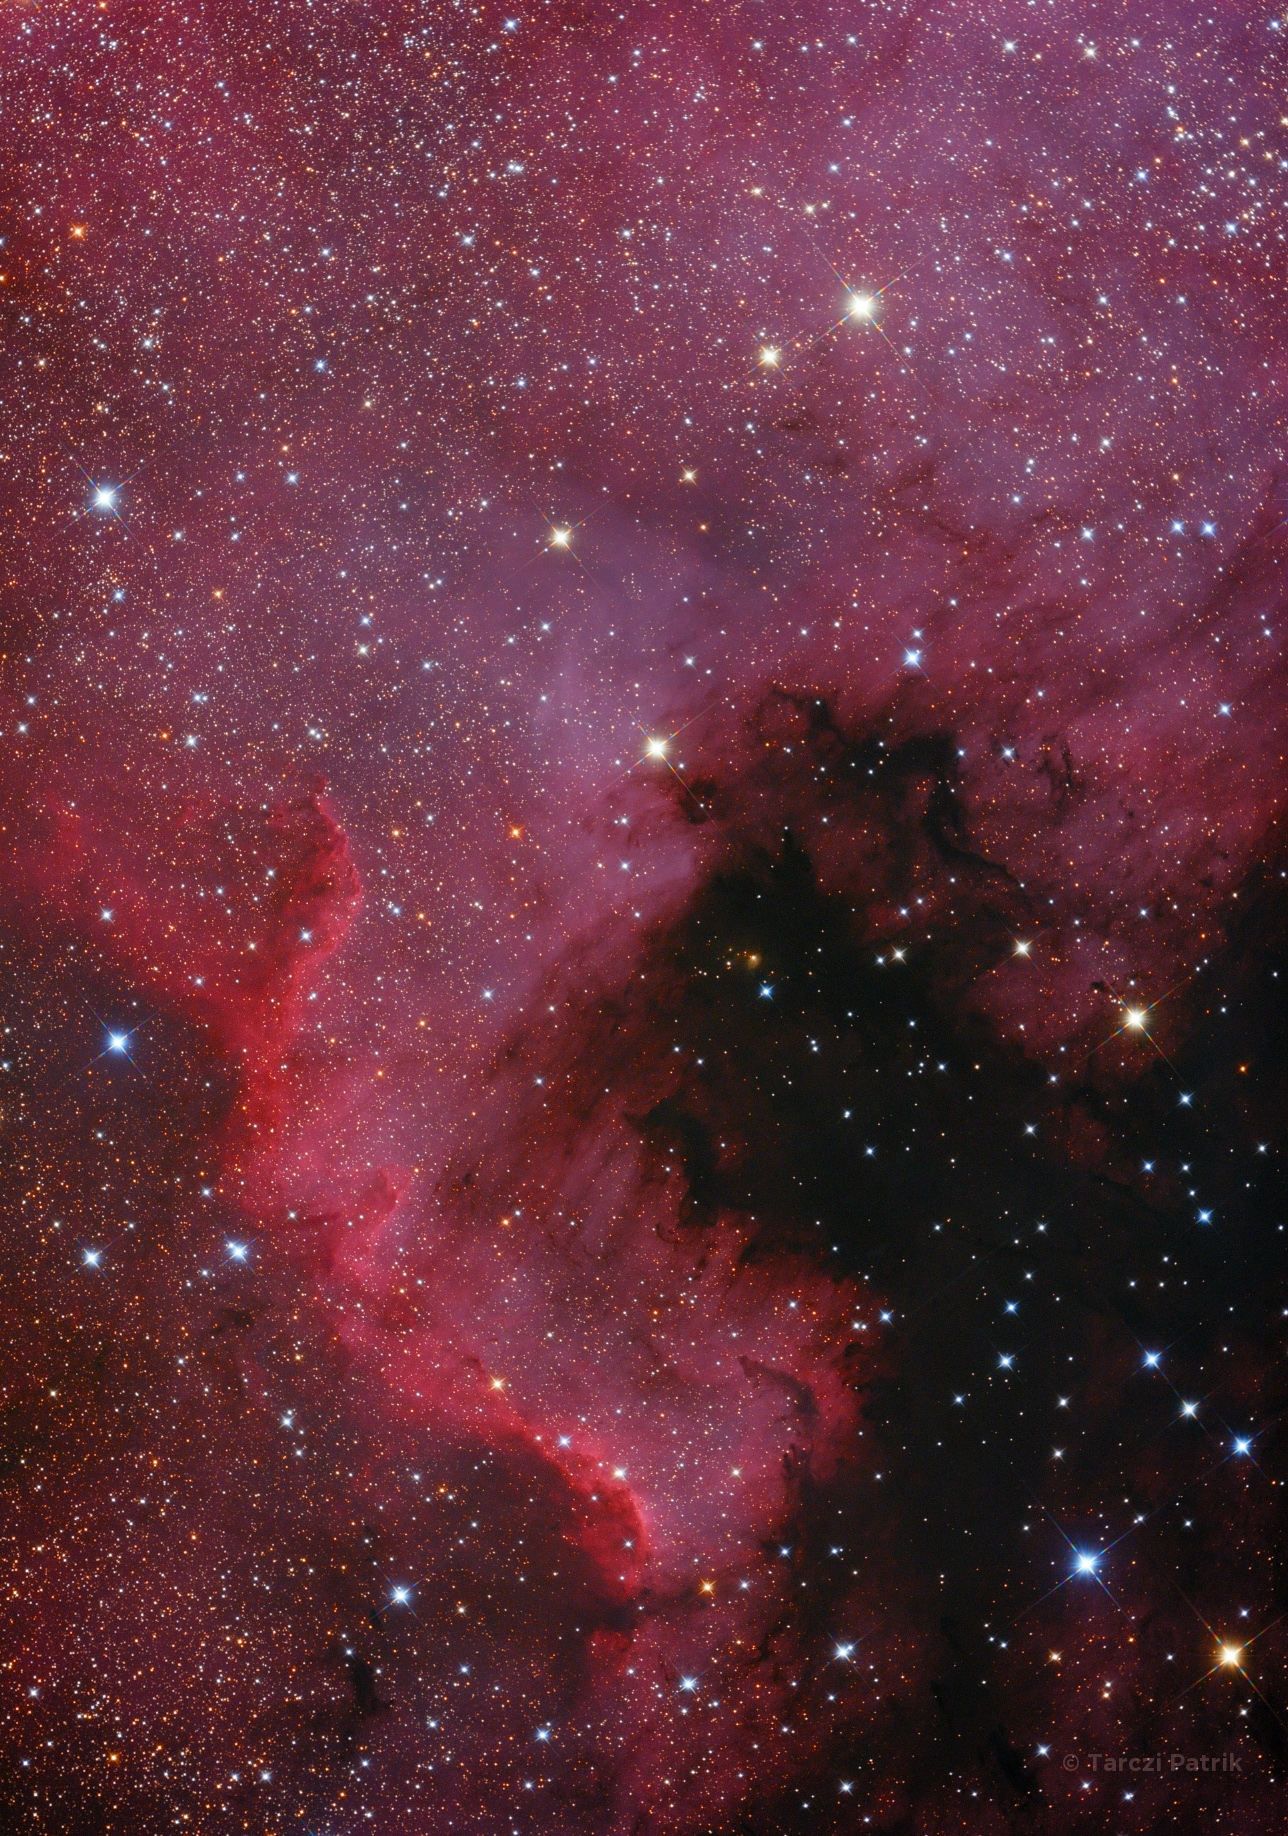 The North America Nebula